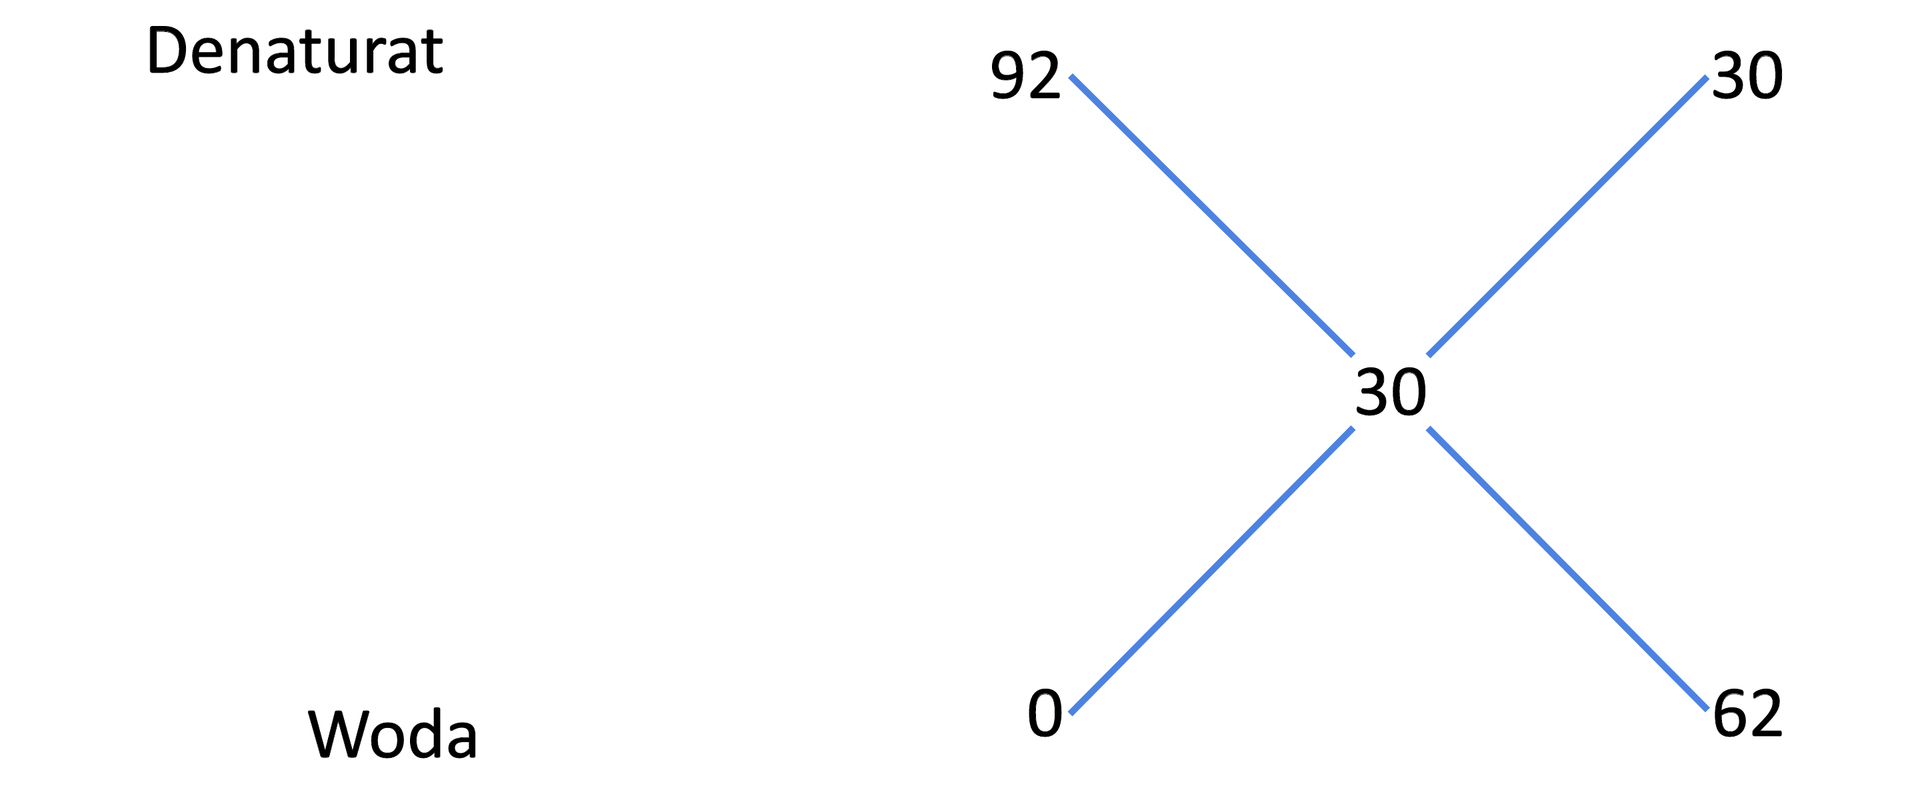 Ilustracja przedstawia metodę krzyżową obliczenia proporcji denaturatu i wody. U góry zapisano denaturat i liczbę dziewięćdziesiąt dwa a na dole wodę i liczbę zero. Od obu tych liczb prowadzą dwie kreski od pierwszej w prawo po skosie w dół, a od drugiej w prawo po skosie do góry, do liczby trzydzieści zapisanej po środku, co odpowiada stężeniu, jakie chcemy otrzymać. Od liczby trzydzieści znowu odchodzą dwie linie: jedna w górę na ten sam poziom co denaturat, a druga w dół na ten sam poziom co woda. Wykonujemy działanie odejmowania po skosie, to znaczy "na krzyż". Wynikiem jest liczba bezwzględna. Stężenie początkowe wody to 0%, to które chcemy otrzymać to 30%, zatem wynik to trzydzieści, natomiast stężenie denaturatu to 92%, a to które chcemy otrzymać to 30%, zatem różnica to sześćdziesiąt dwa. Wynika z tego że należy zmieszać denaturat i wodę w proporcji trzydzieści do sześćdziesięciu dwóch.